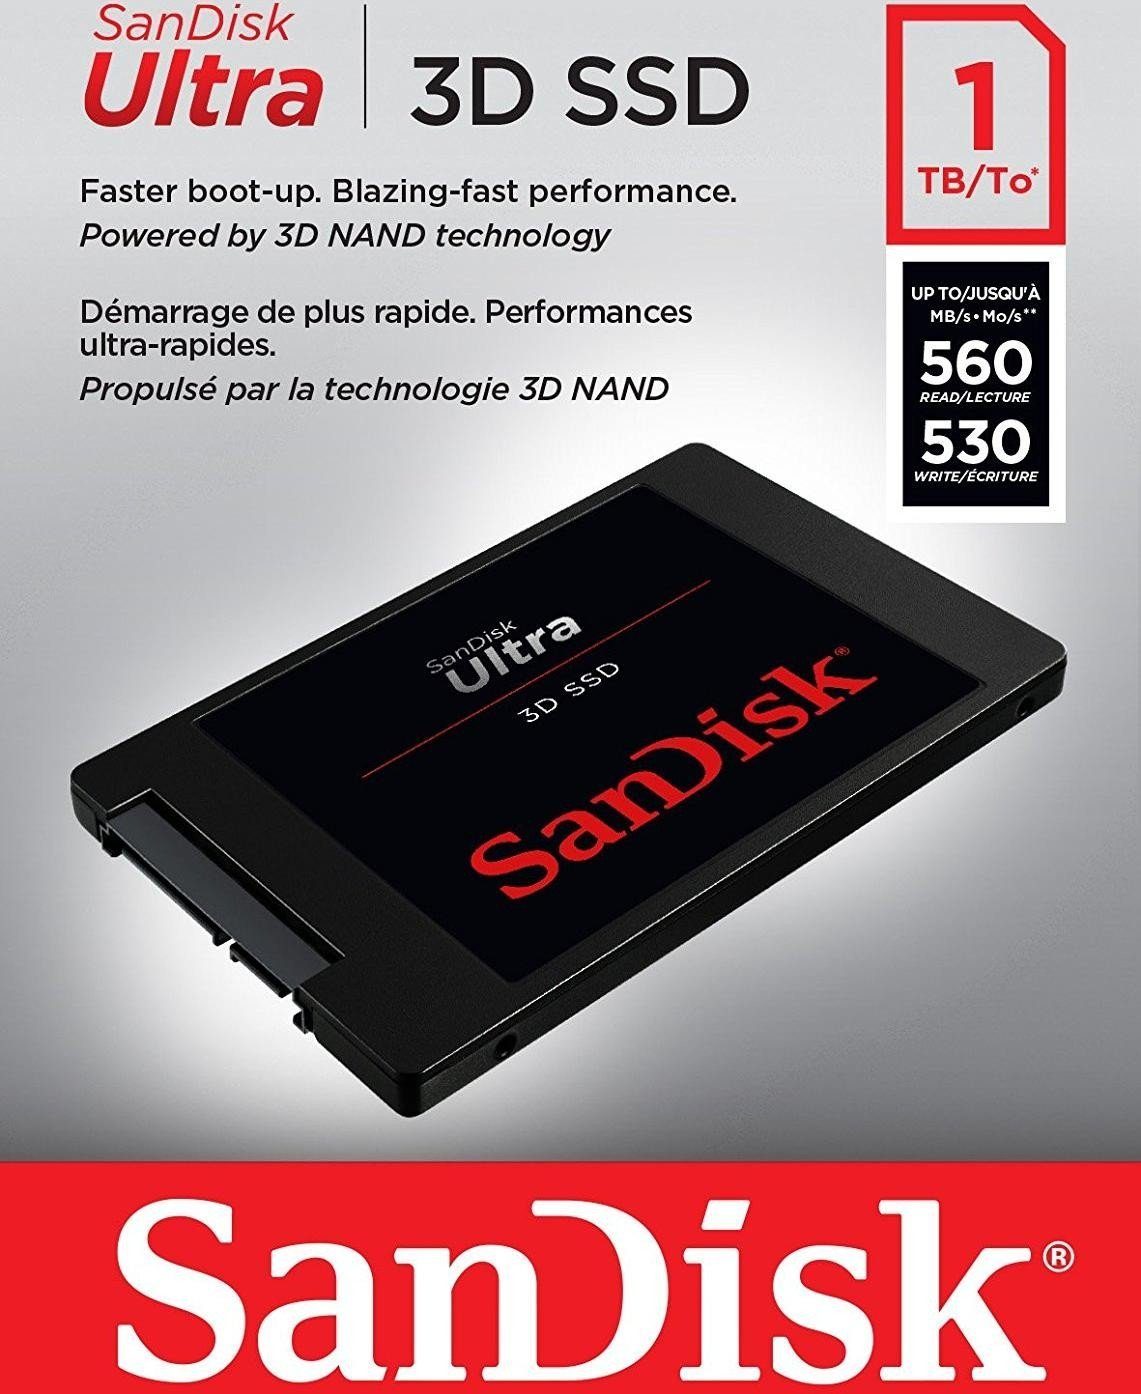 Sandisk Ultra MB/S 530 MB/S 3D SSD (1TB) interne Lesegeschwindigkeit, SSD 560 2,5"" Schreibgeschwindigkeit